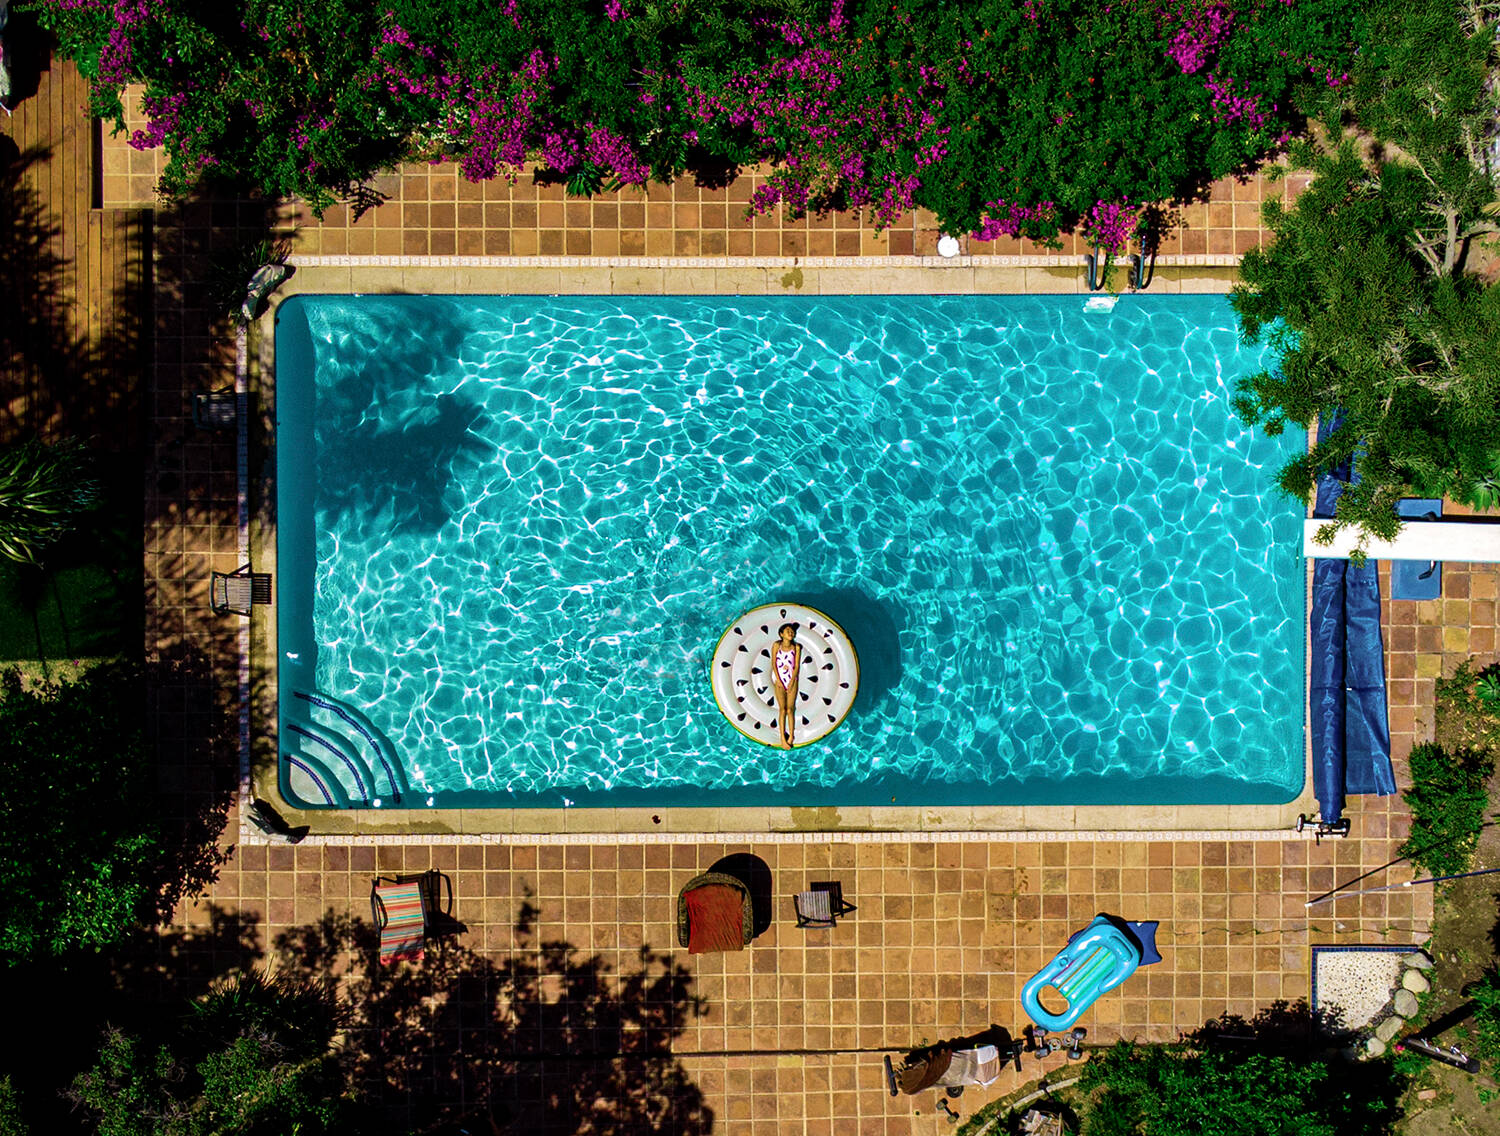 Huge pool, Mediterranean, colorful